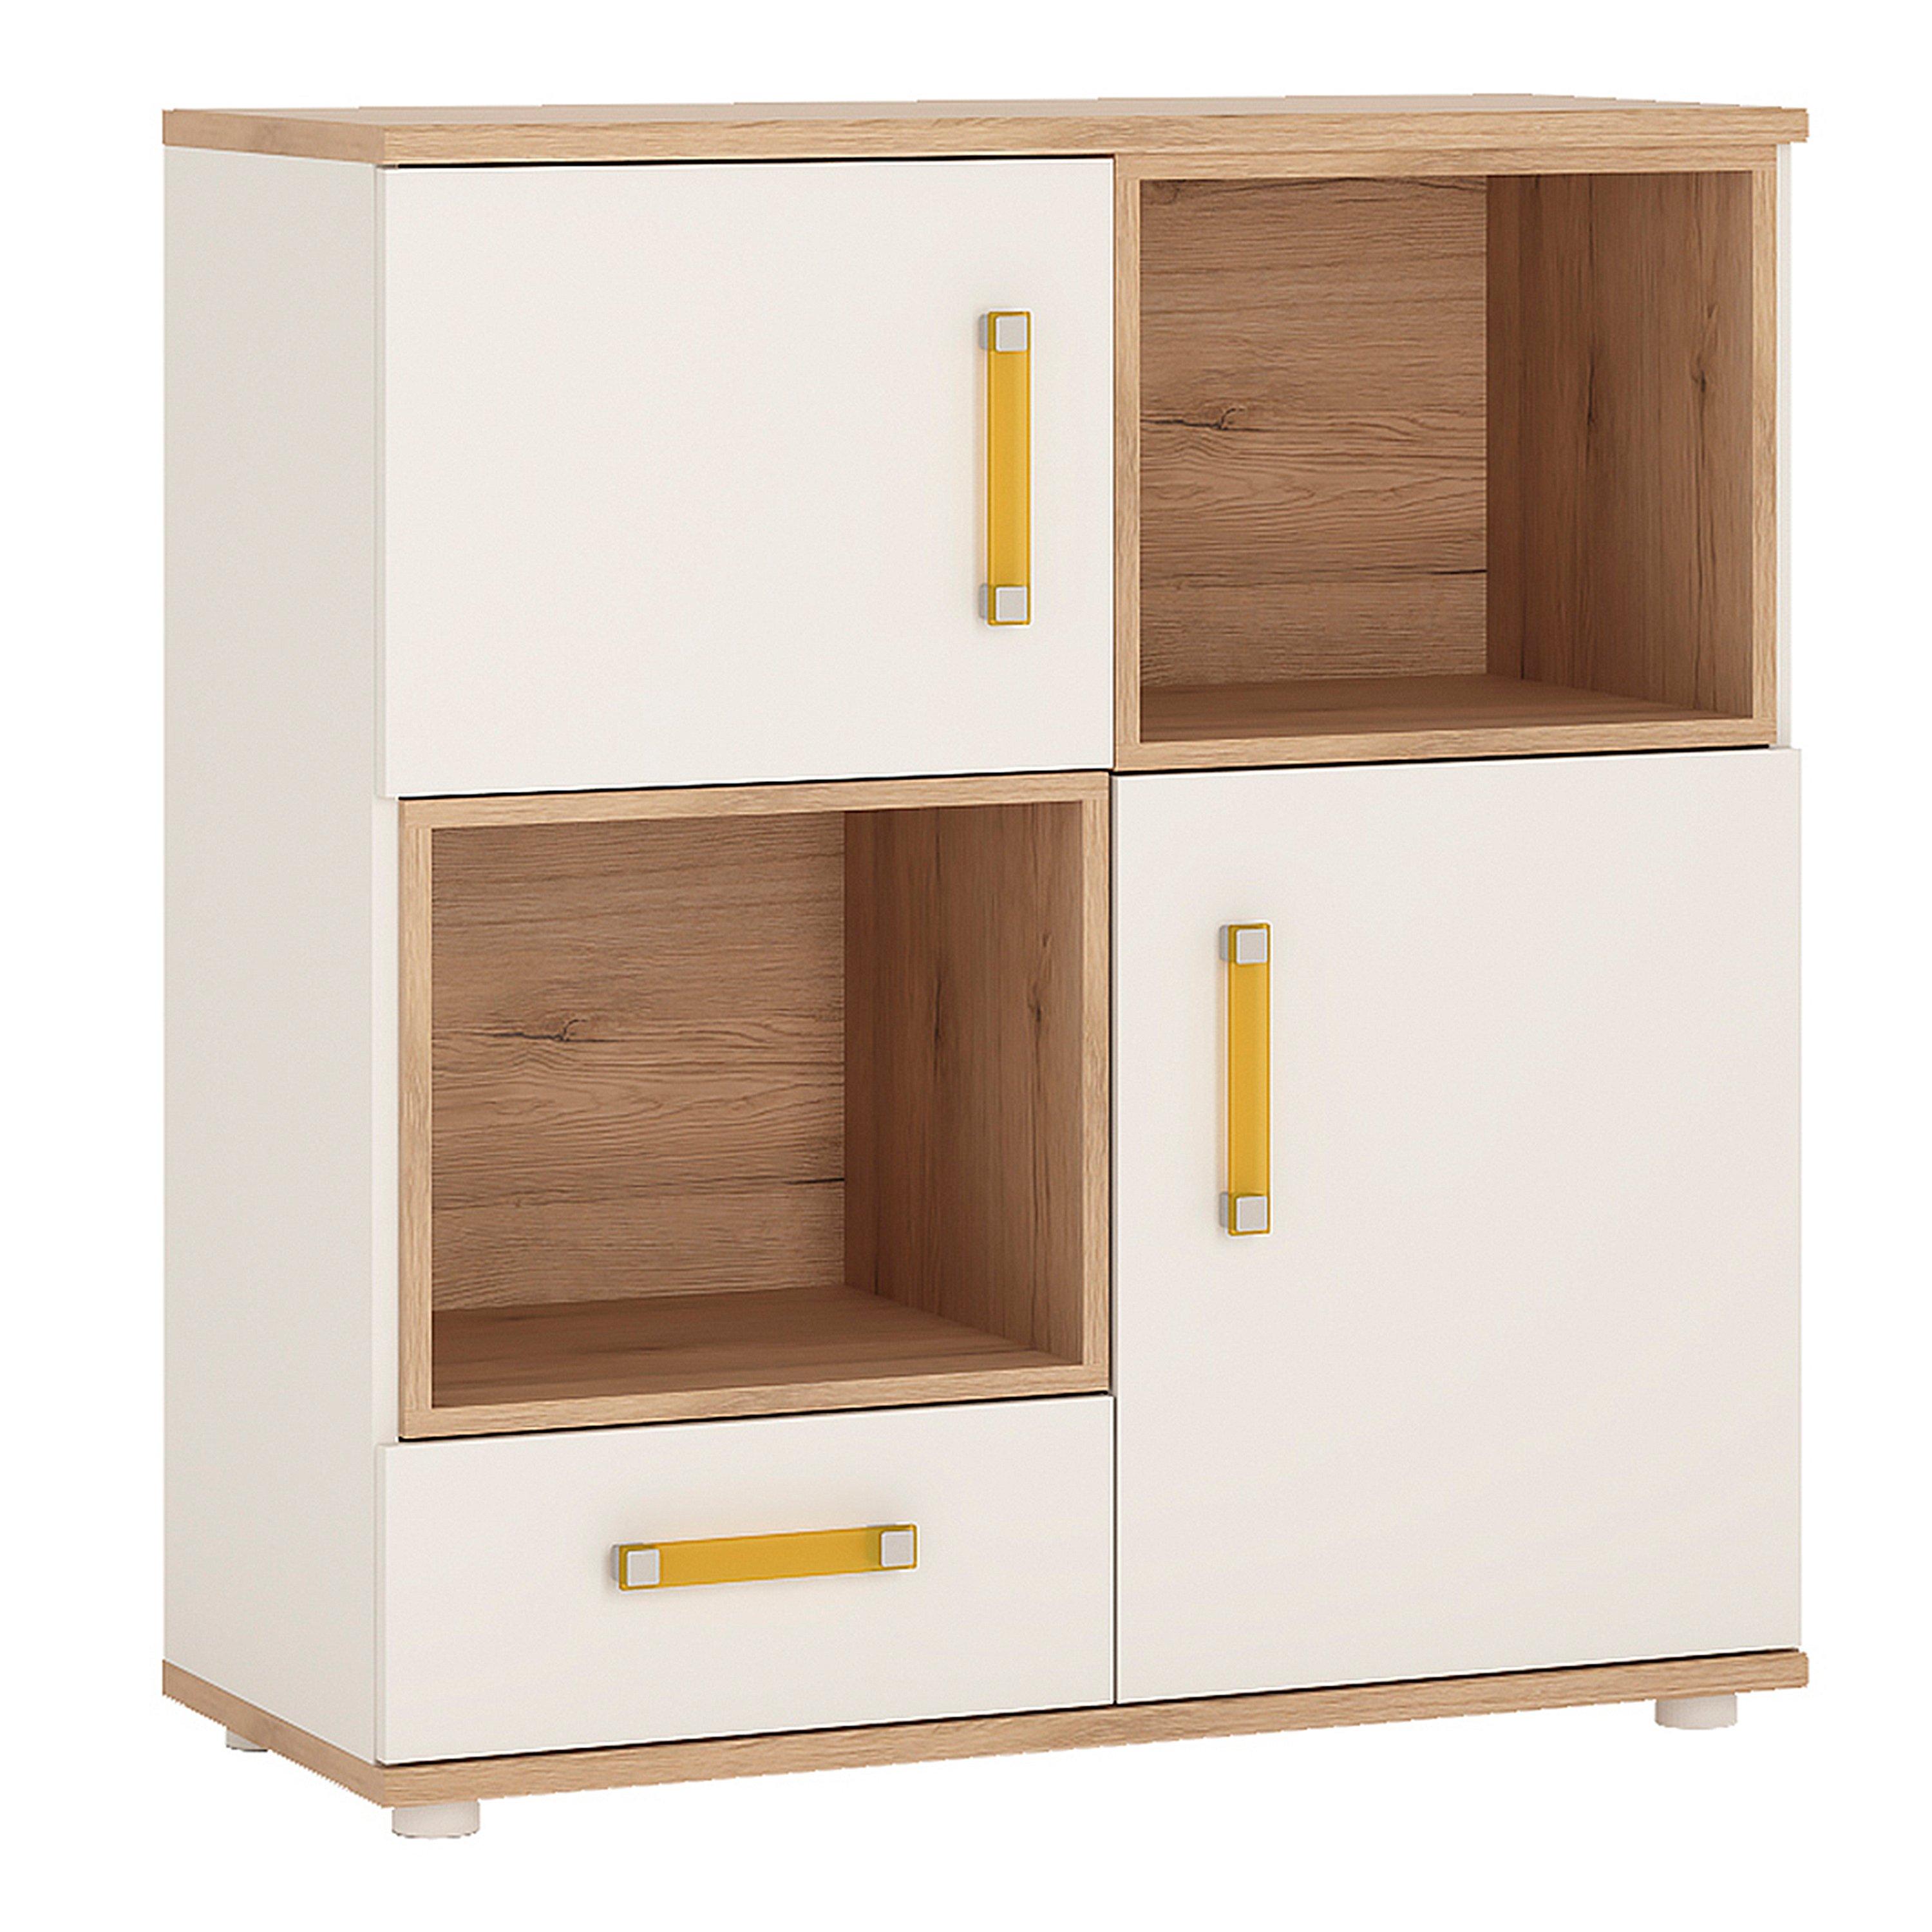 4KIDS 2 Door 1 Drawer Cupboard with 2 Open Shelves